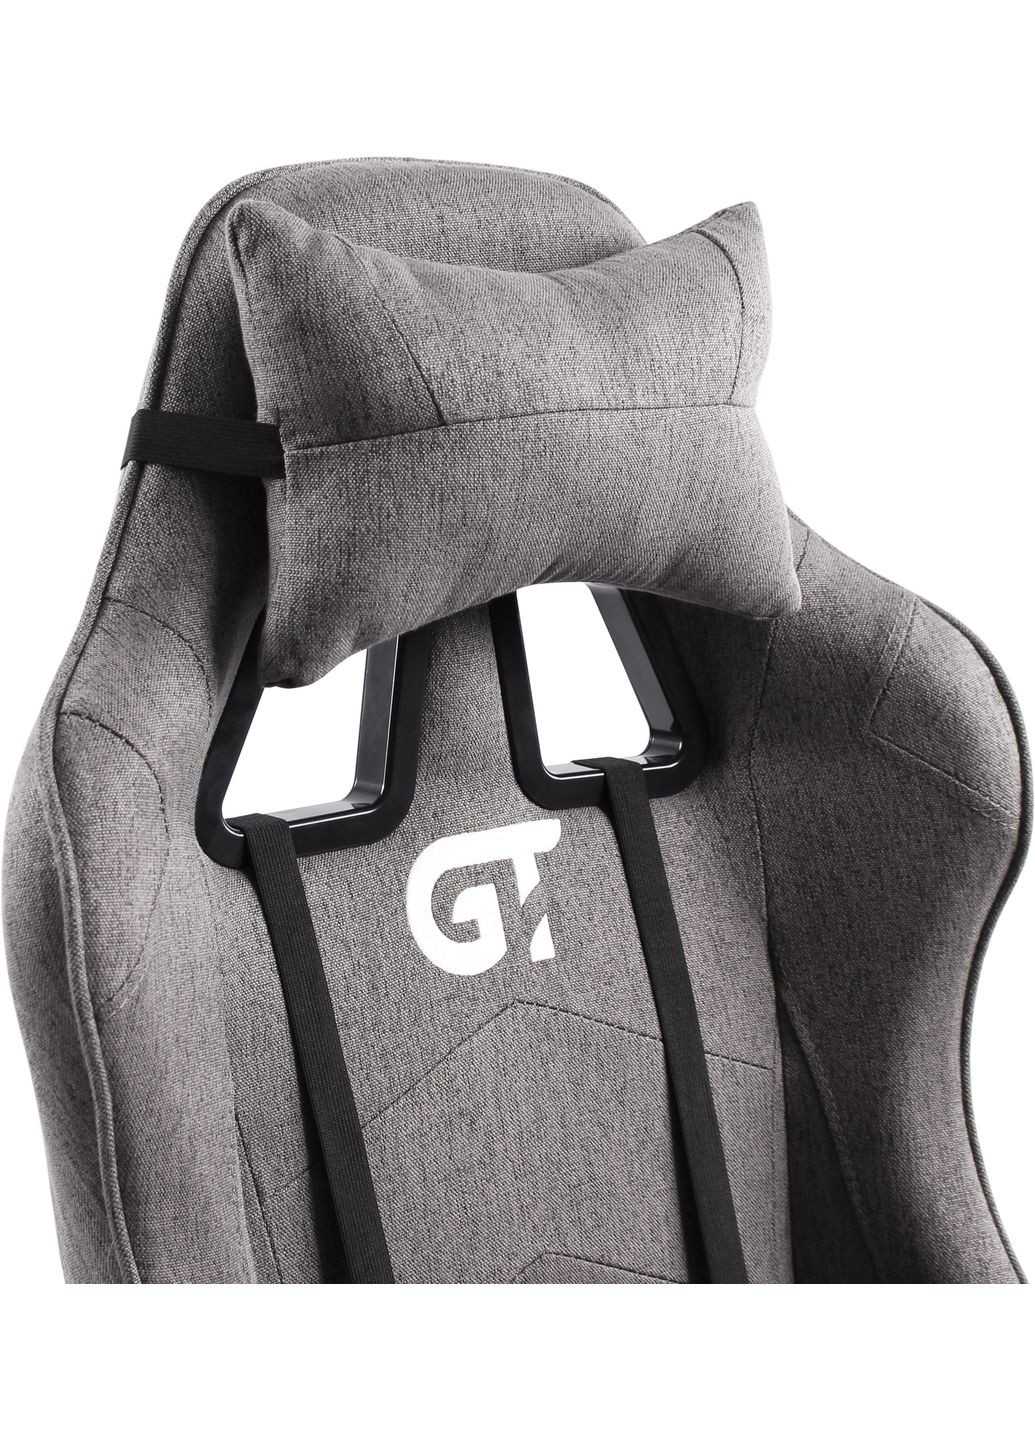 Геймерское детское кресло X5934-B Kids Fabric Gray GT Racer (293944114)